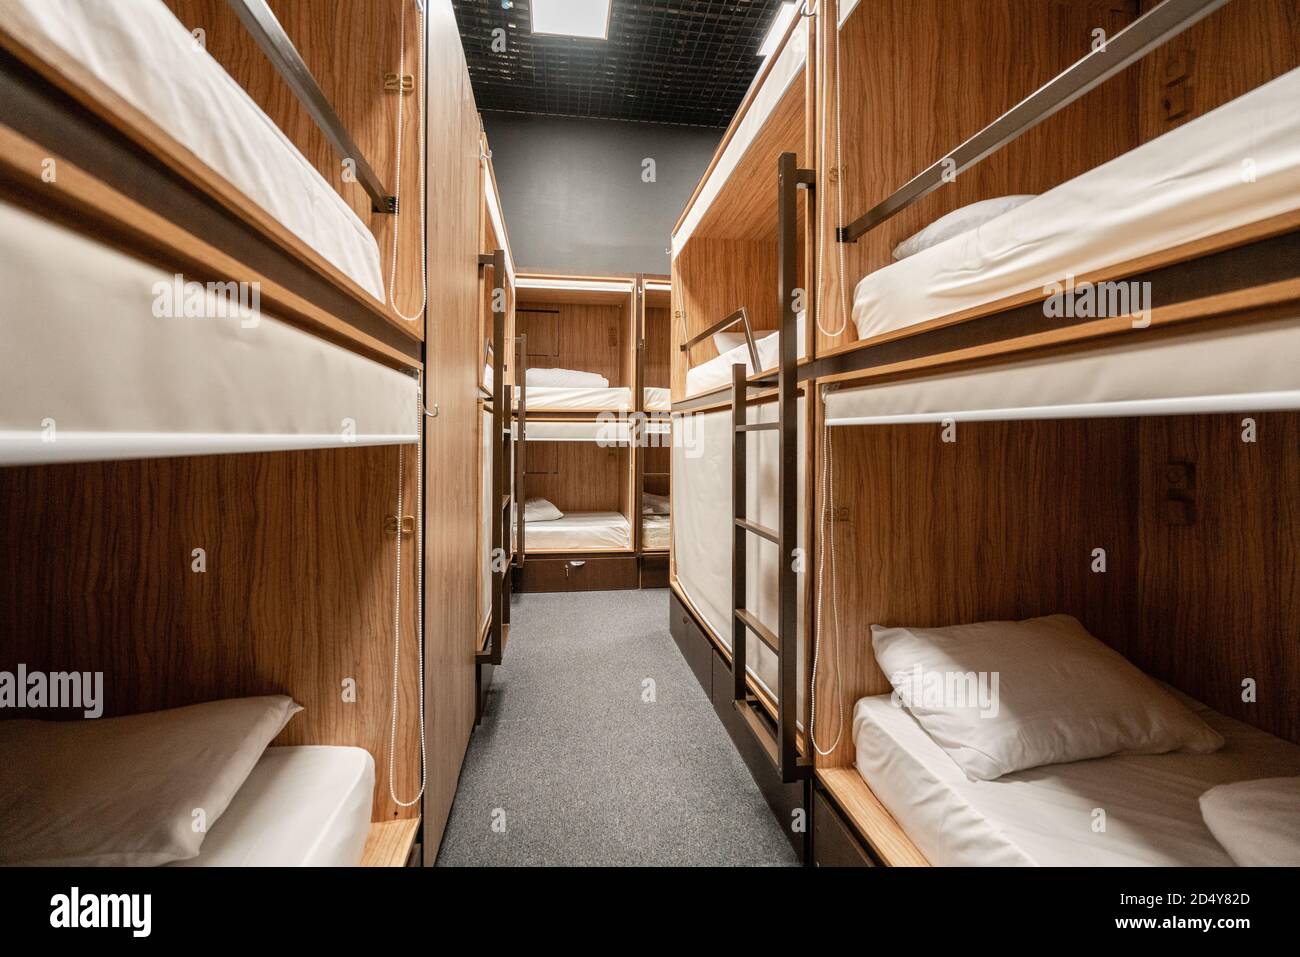 Russie, Moscou - novembre 26 2018. Dites hôtel génial. Le dortoir de l'hôtel  dispose de plusieurs lits disposés dans une chambre. Propre auberge petite  chambre avec des lits superposés en bois Photo